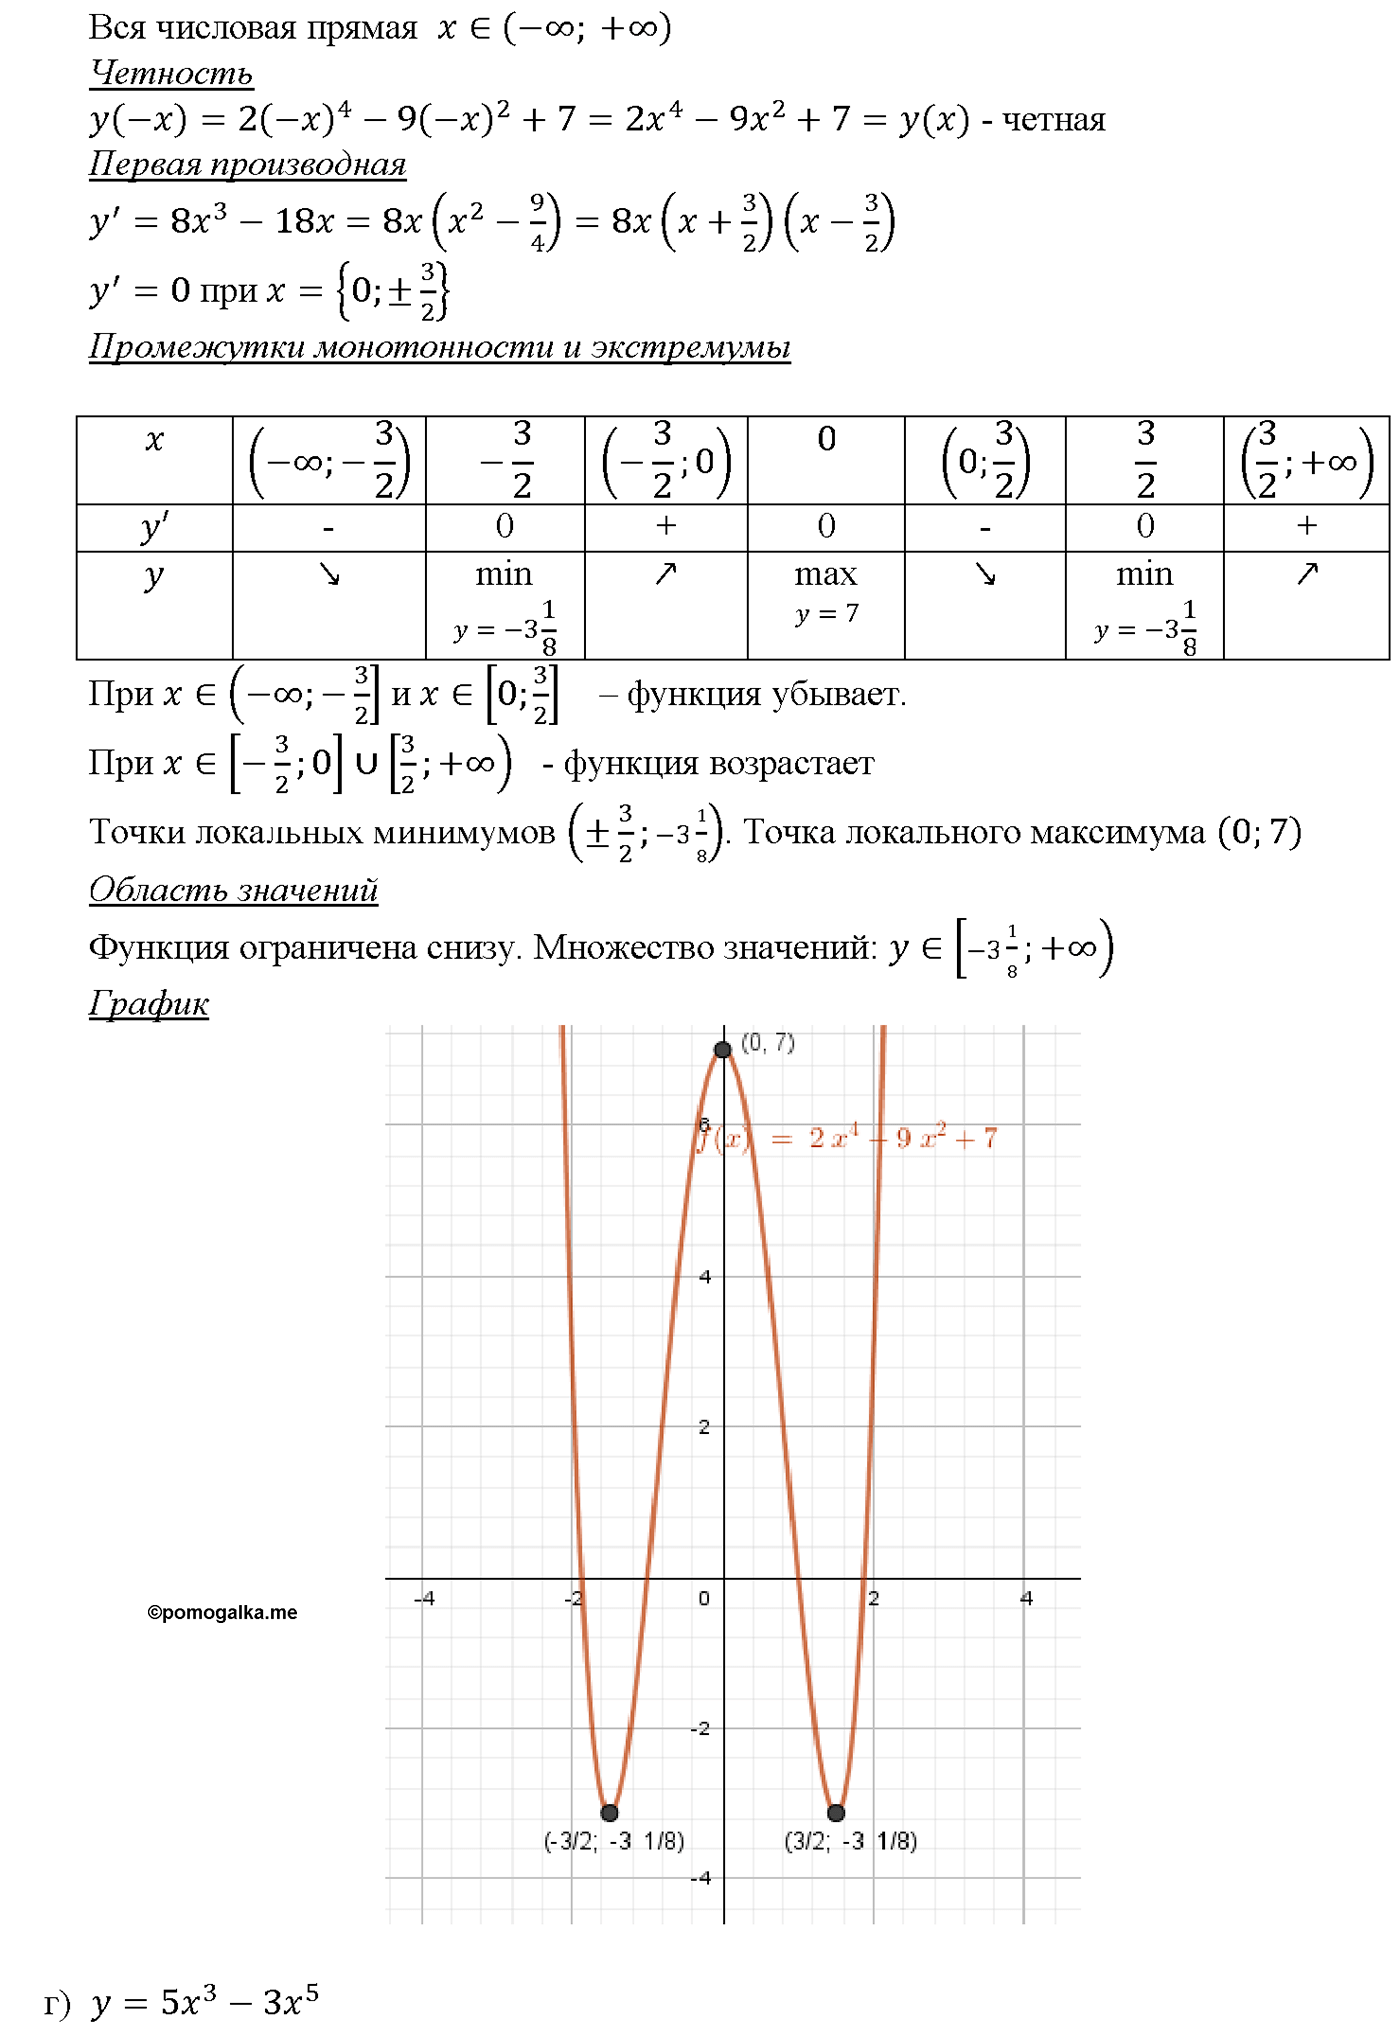 задача №31.7 алгебра 10-11 класс Мордкович